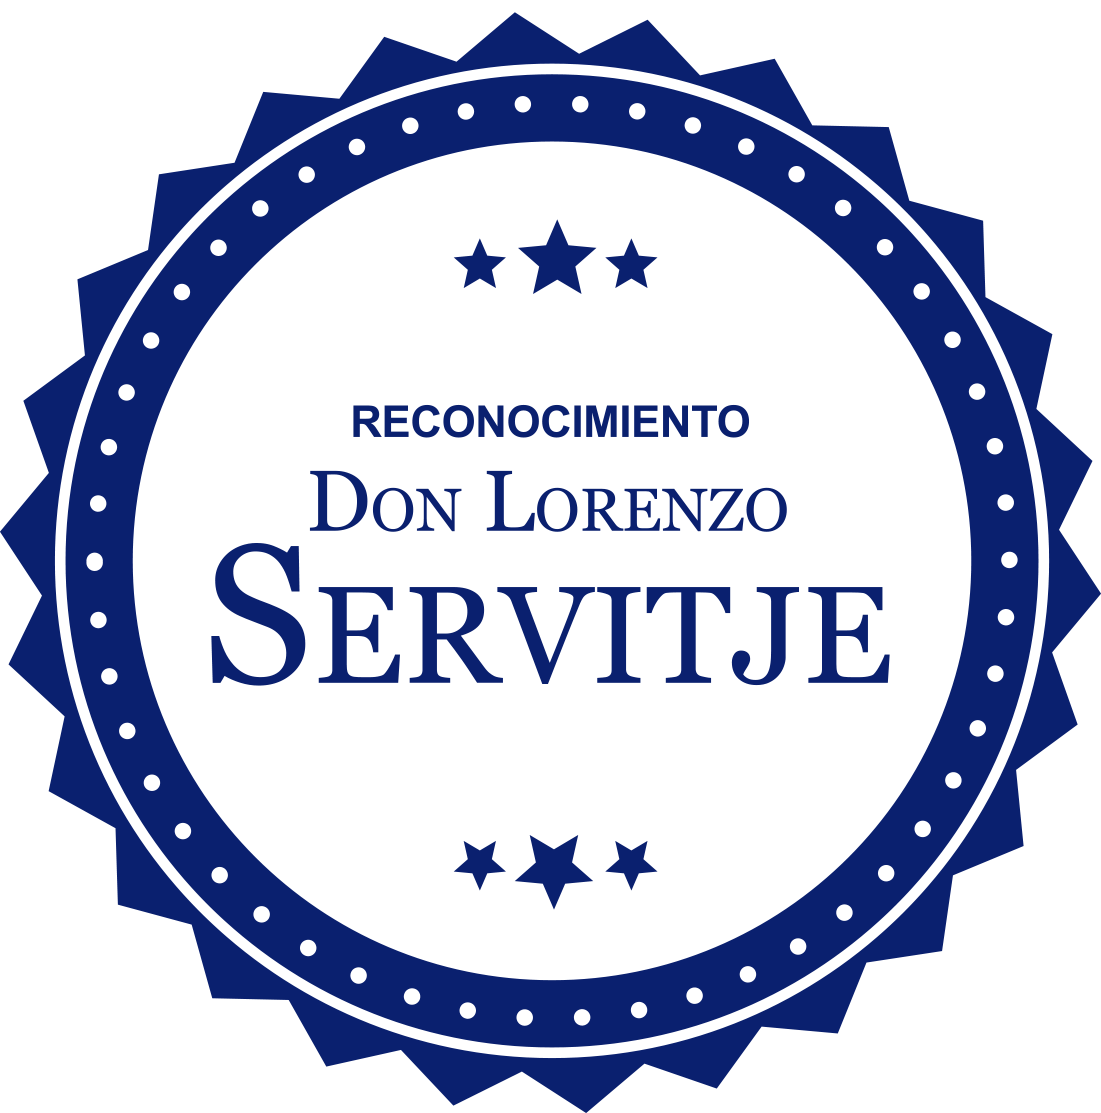 Reconocimiento Don Lorenzo Servitje (Copy) (Copy) (Copy)